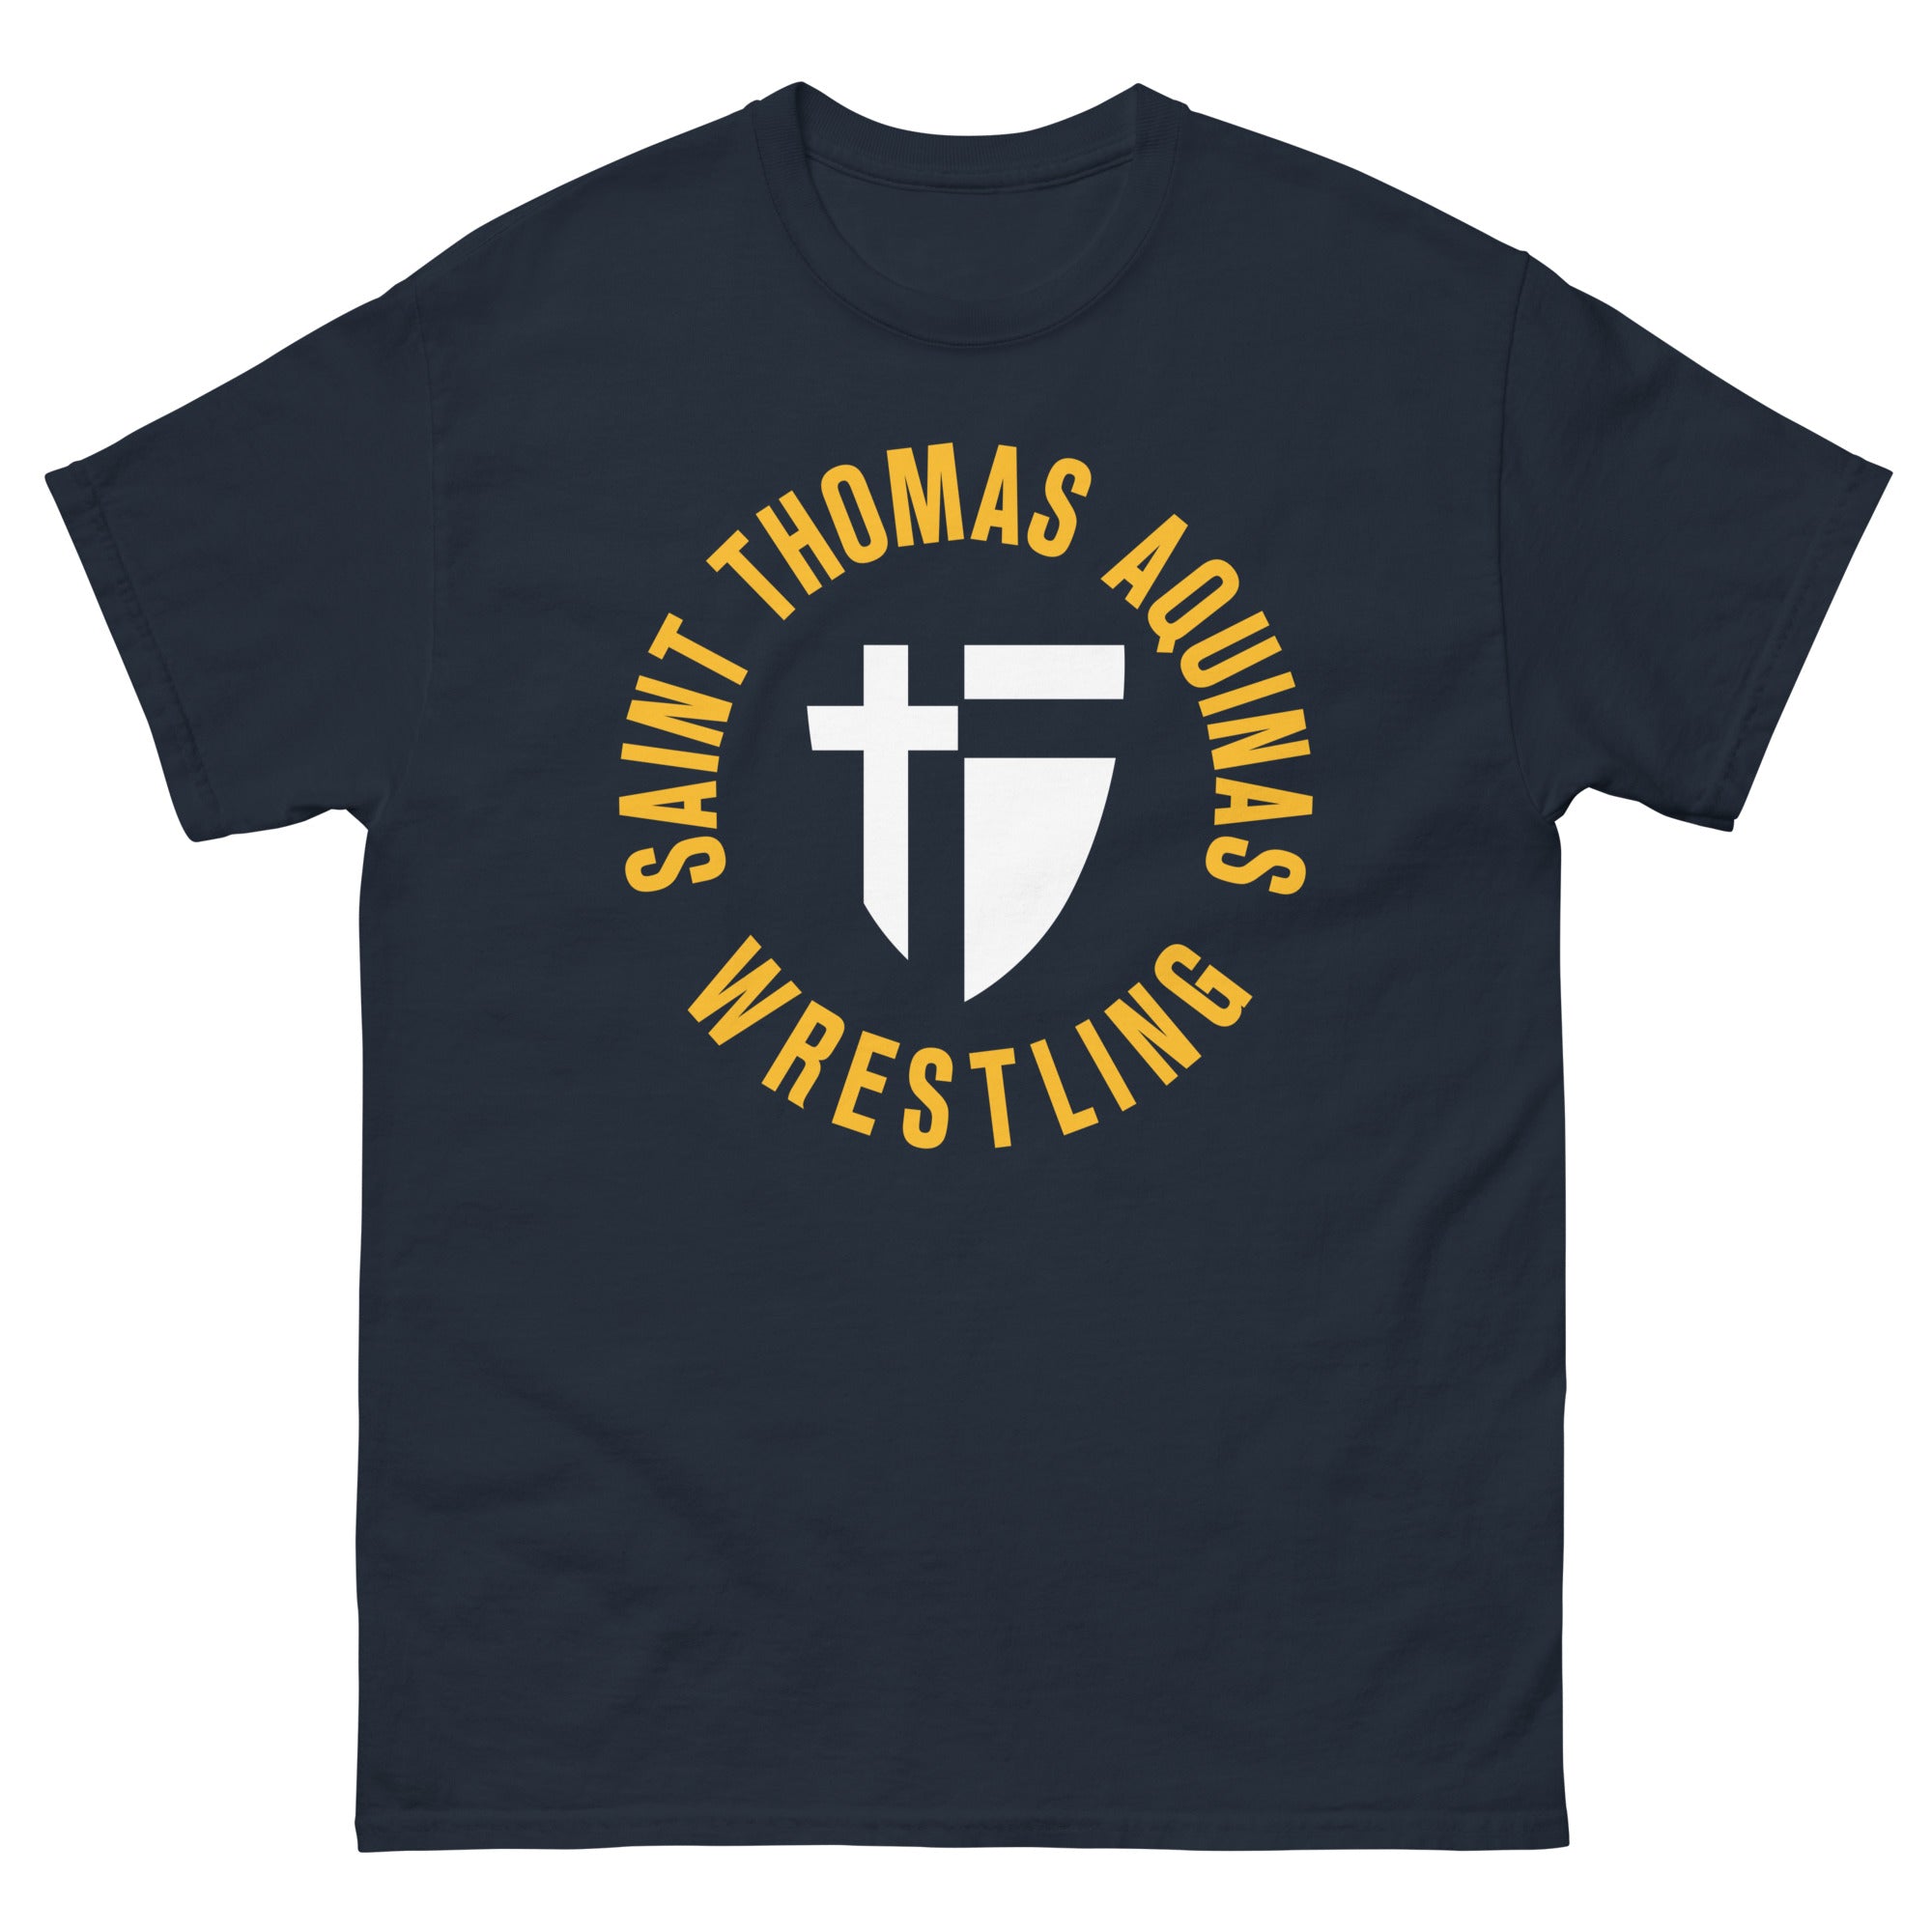 Saint Thomas Aquinas Wrestling Men's classic tee